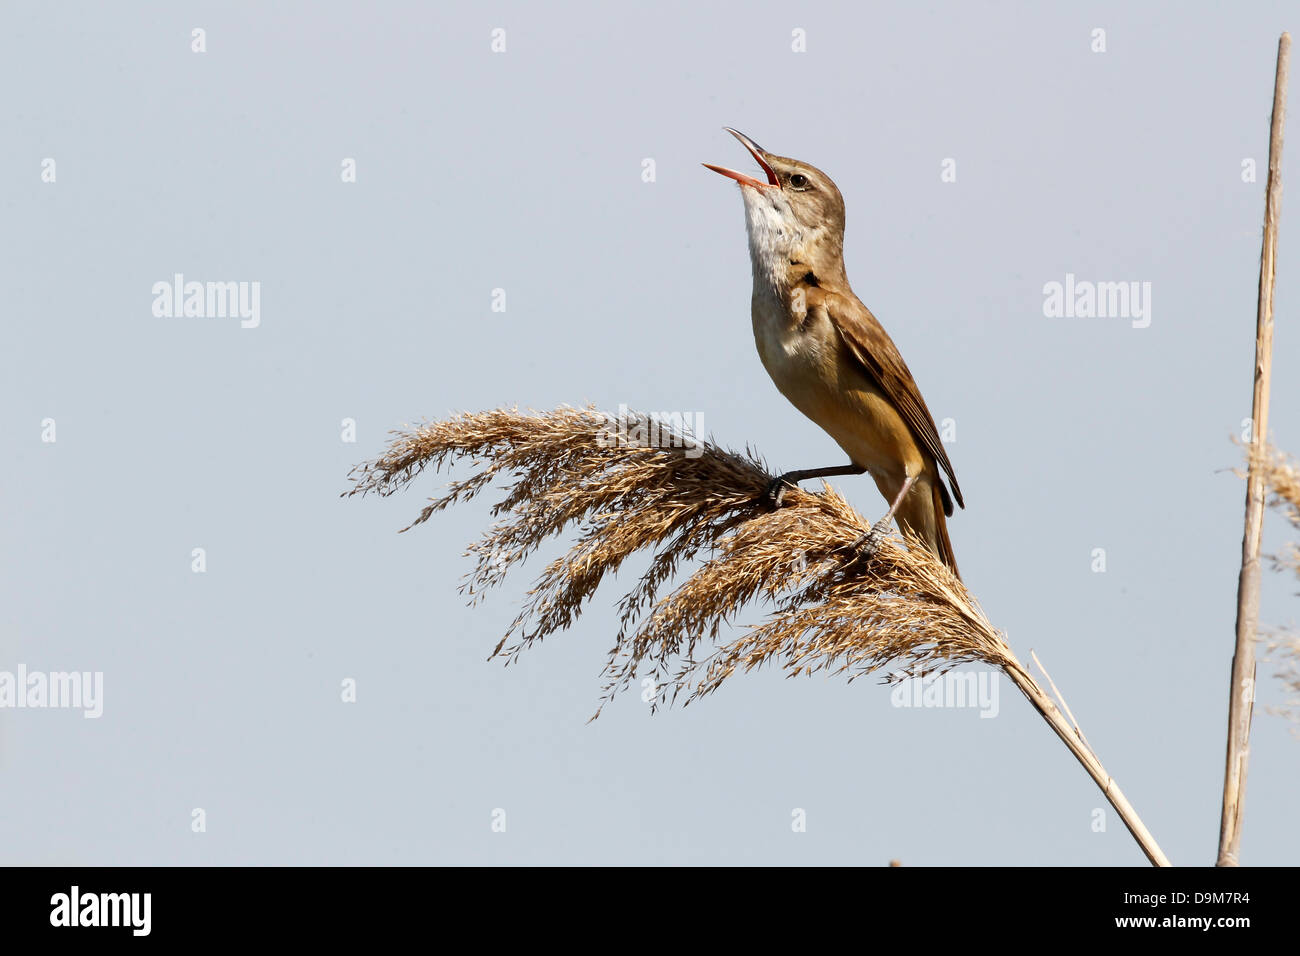 Great-reed warbler, Acrocephalus arundinaceus, single bird on reed singing, Bulgaria, May 2013 Stock Photo